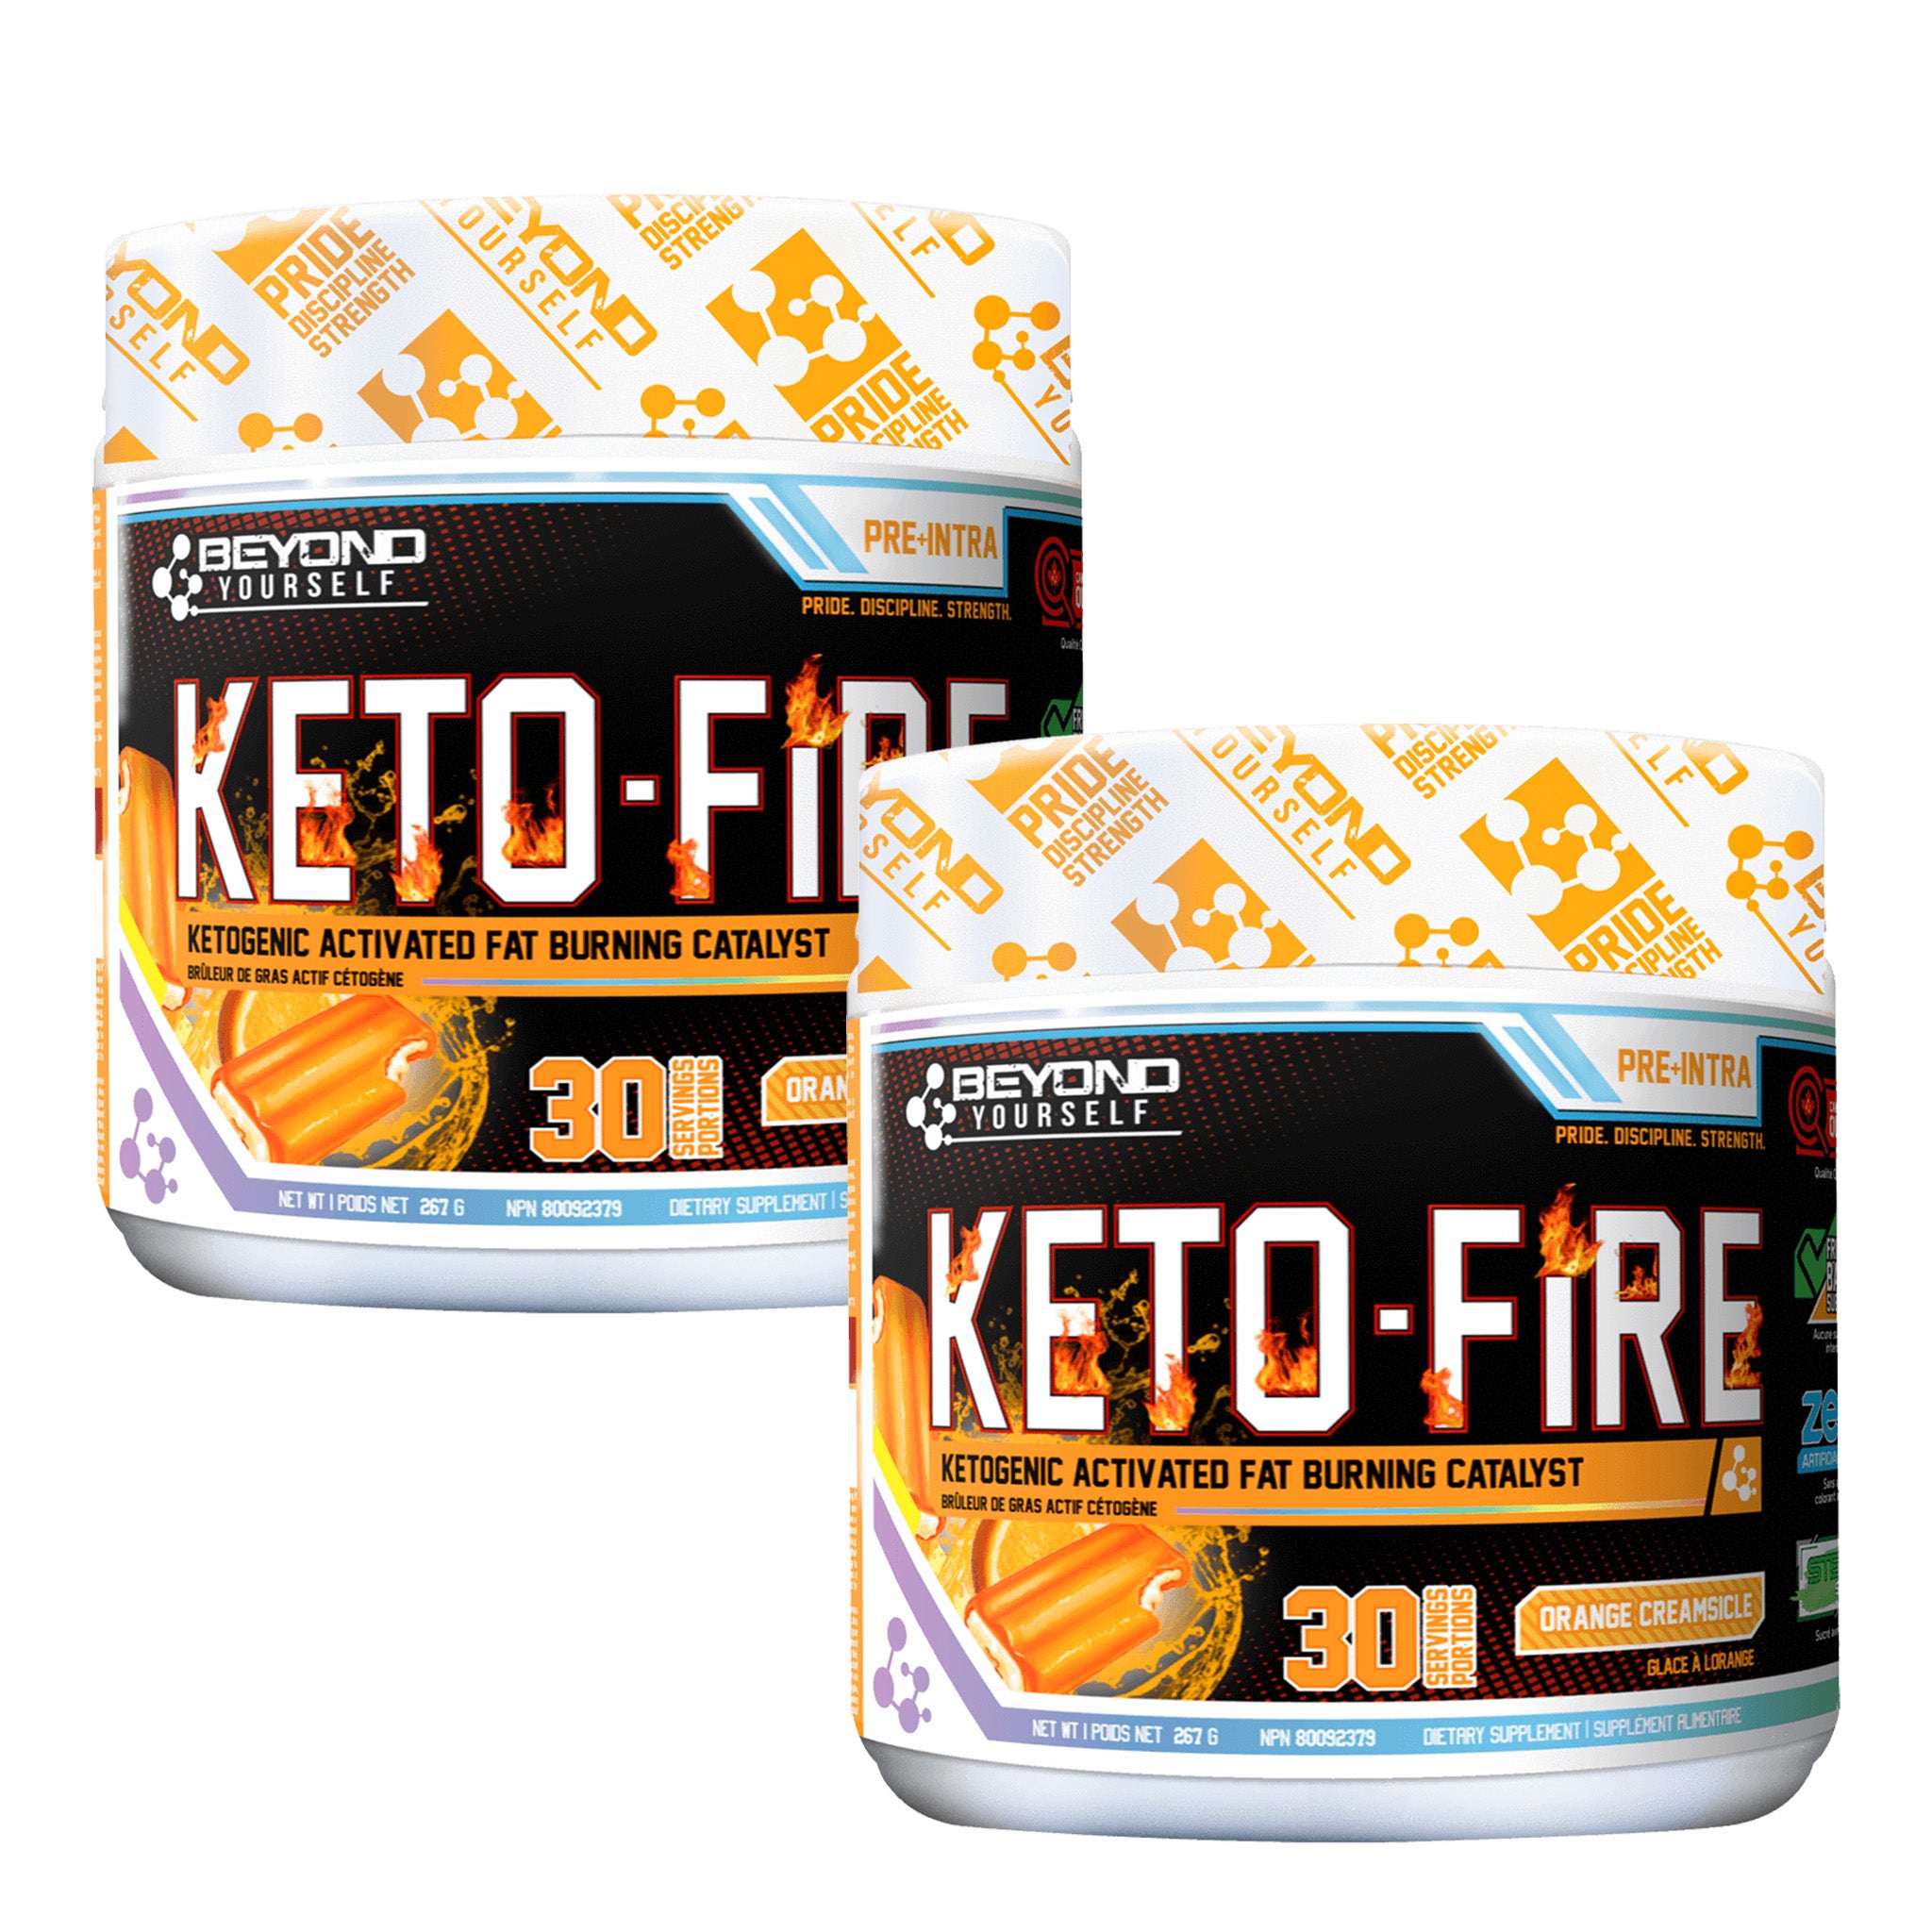 [COMBO] Keto Fire (30 Servings) + Keto Fire (30 Servings)